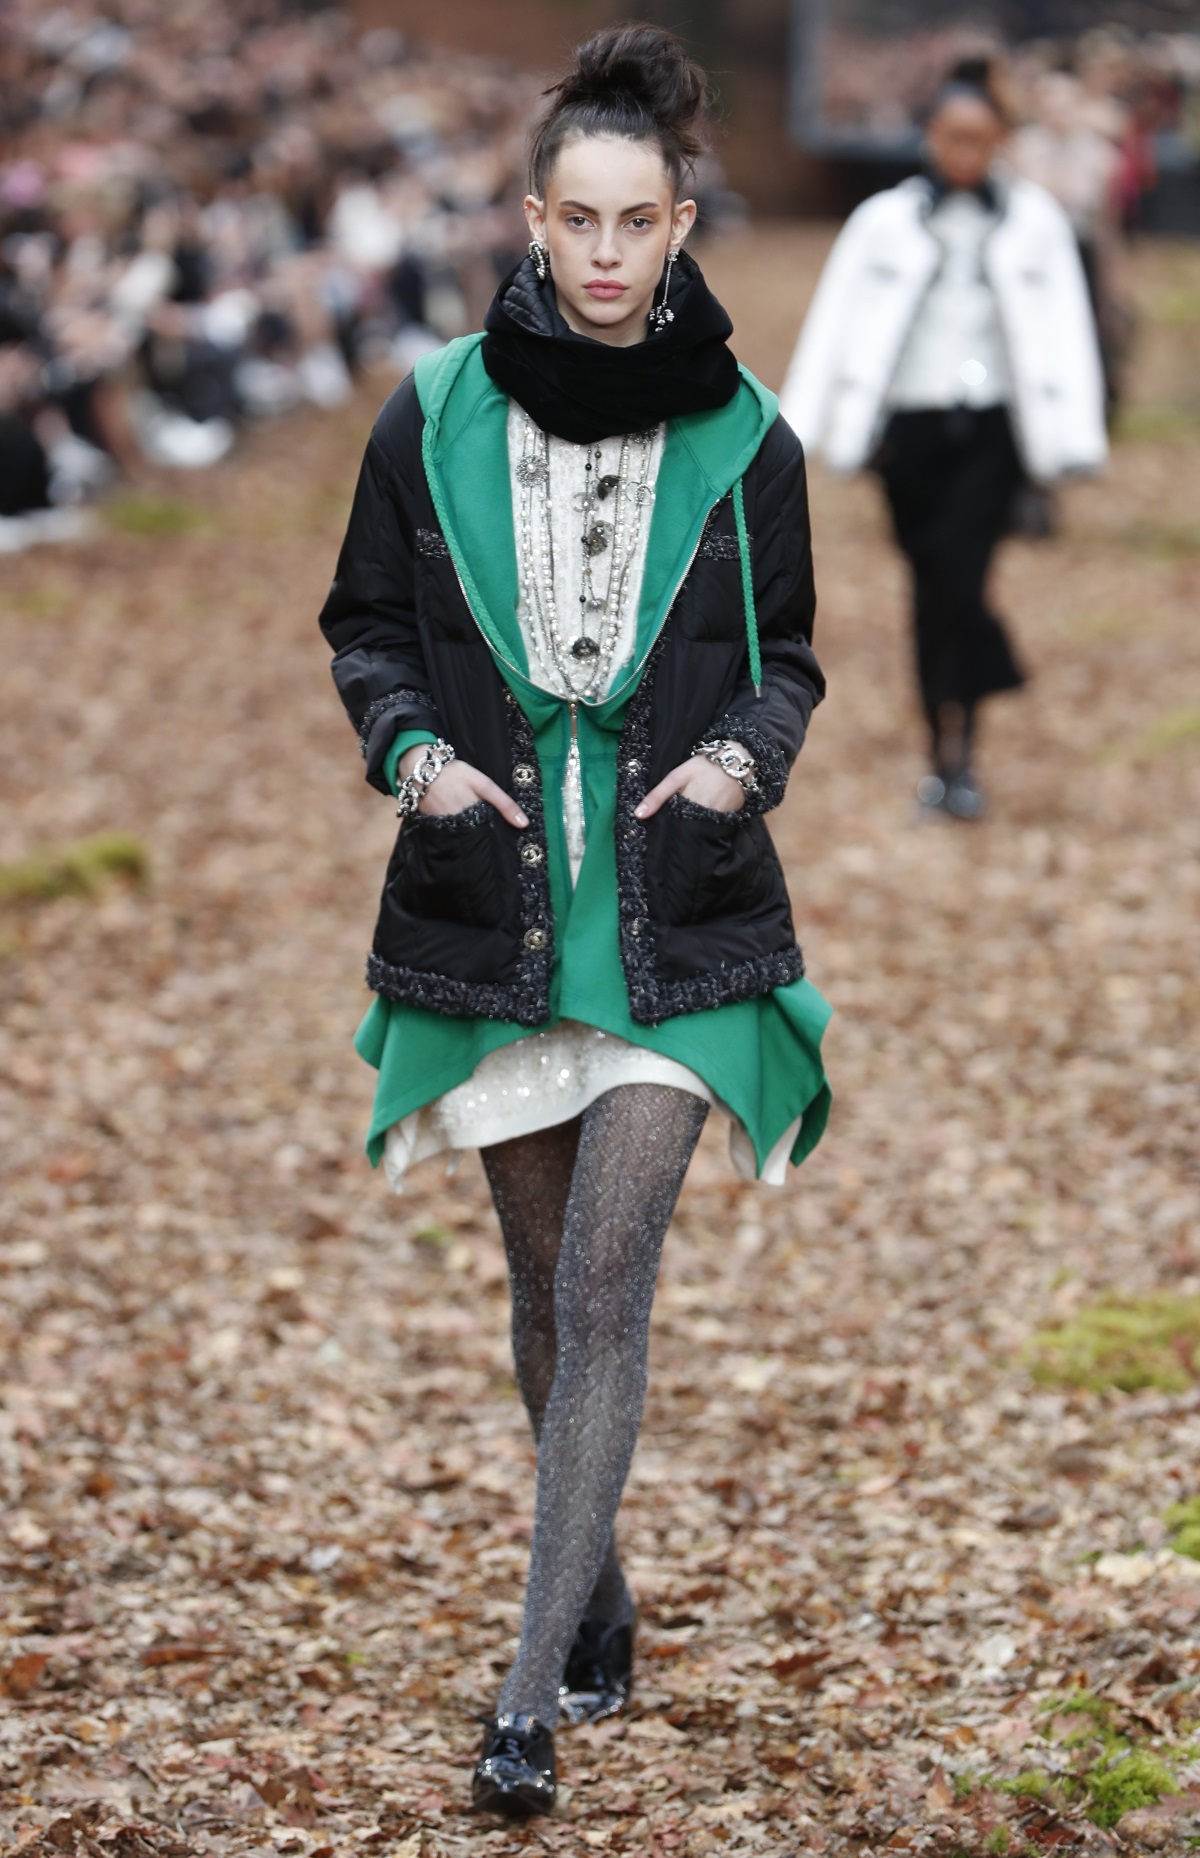 Карл Лагерфелд облече манекенките в дрехи с щамповани листа за ревюто, което възпя есента насред мъглива гора в Гран пале в Париж. В колекцията есен/зима, представена през последния ден на Парижката седмица на модата, има някои доста непрактични облекла за разходка сред природата, като златисти ботушки или черната рокличка, която демонстрира дъщерята на Синди Крауфорд - 16-годишната Кая Гербер.